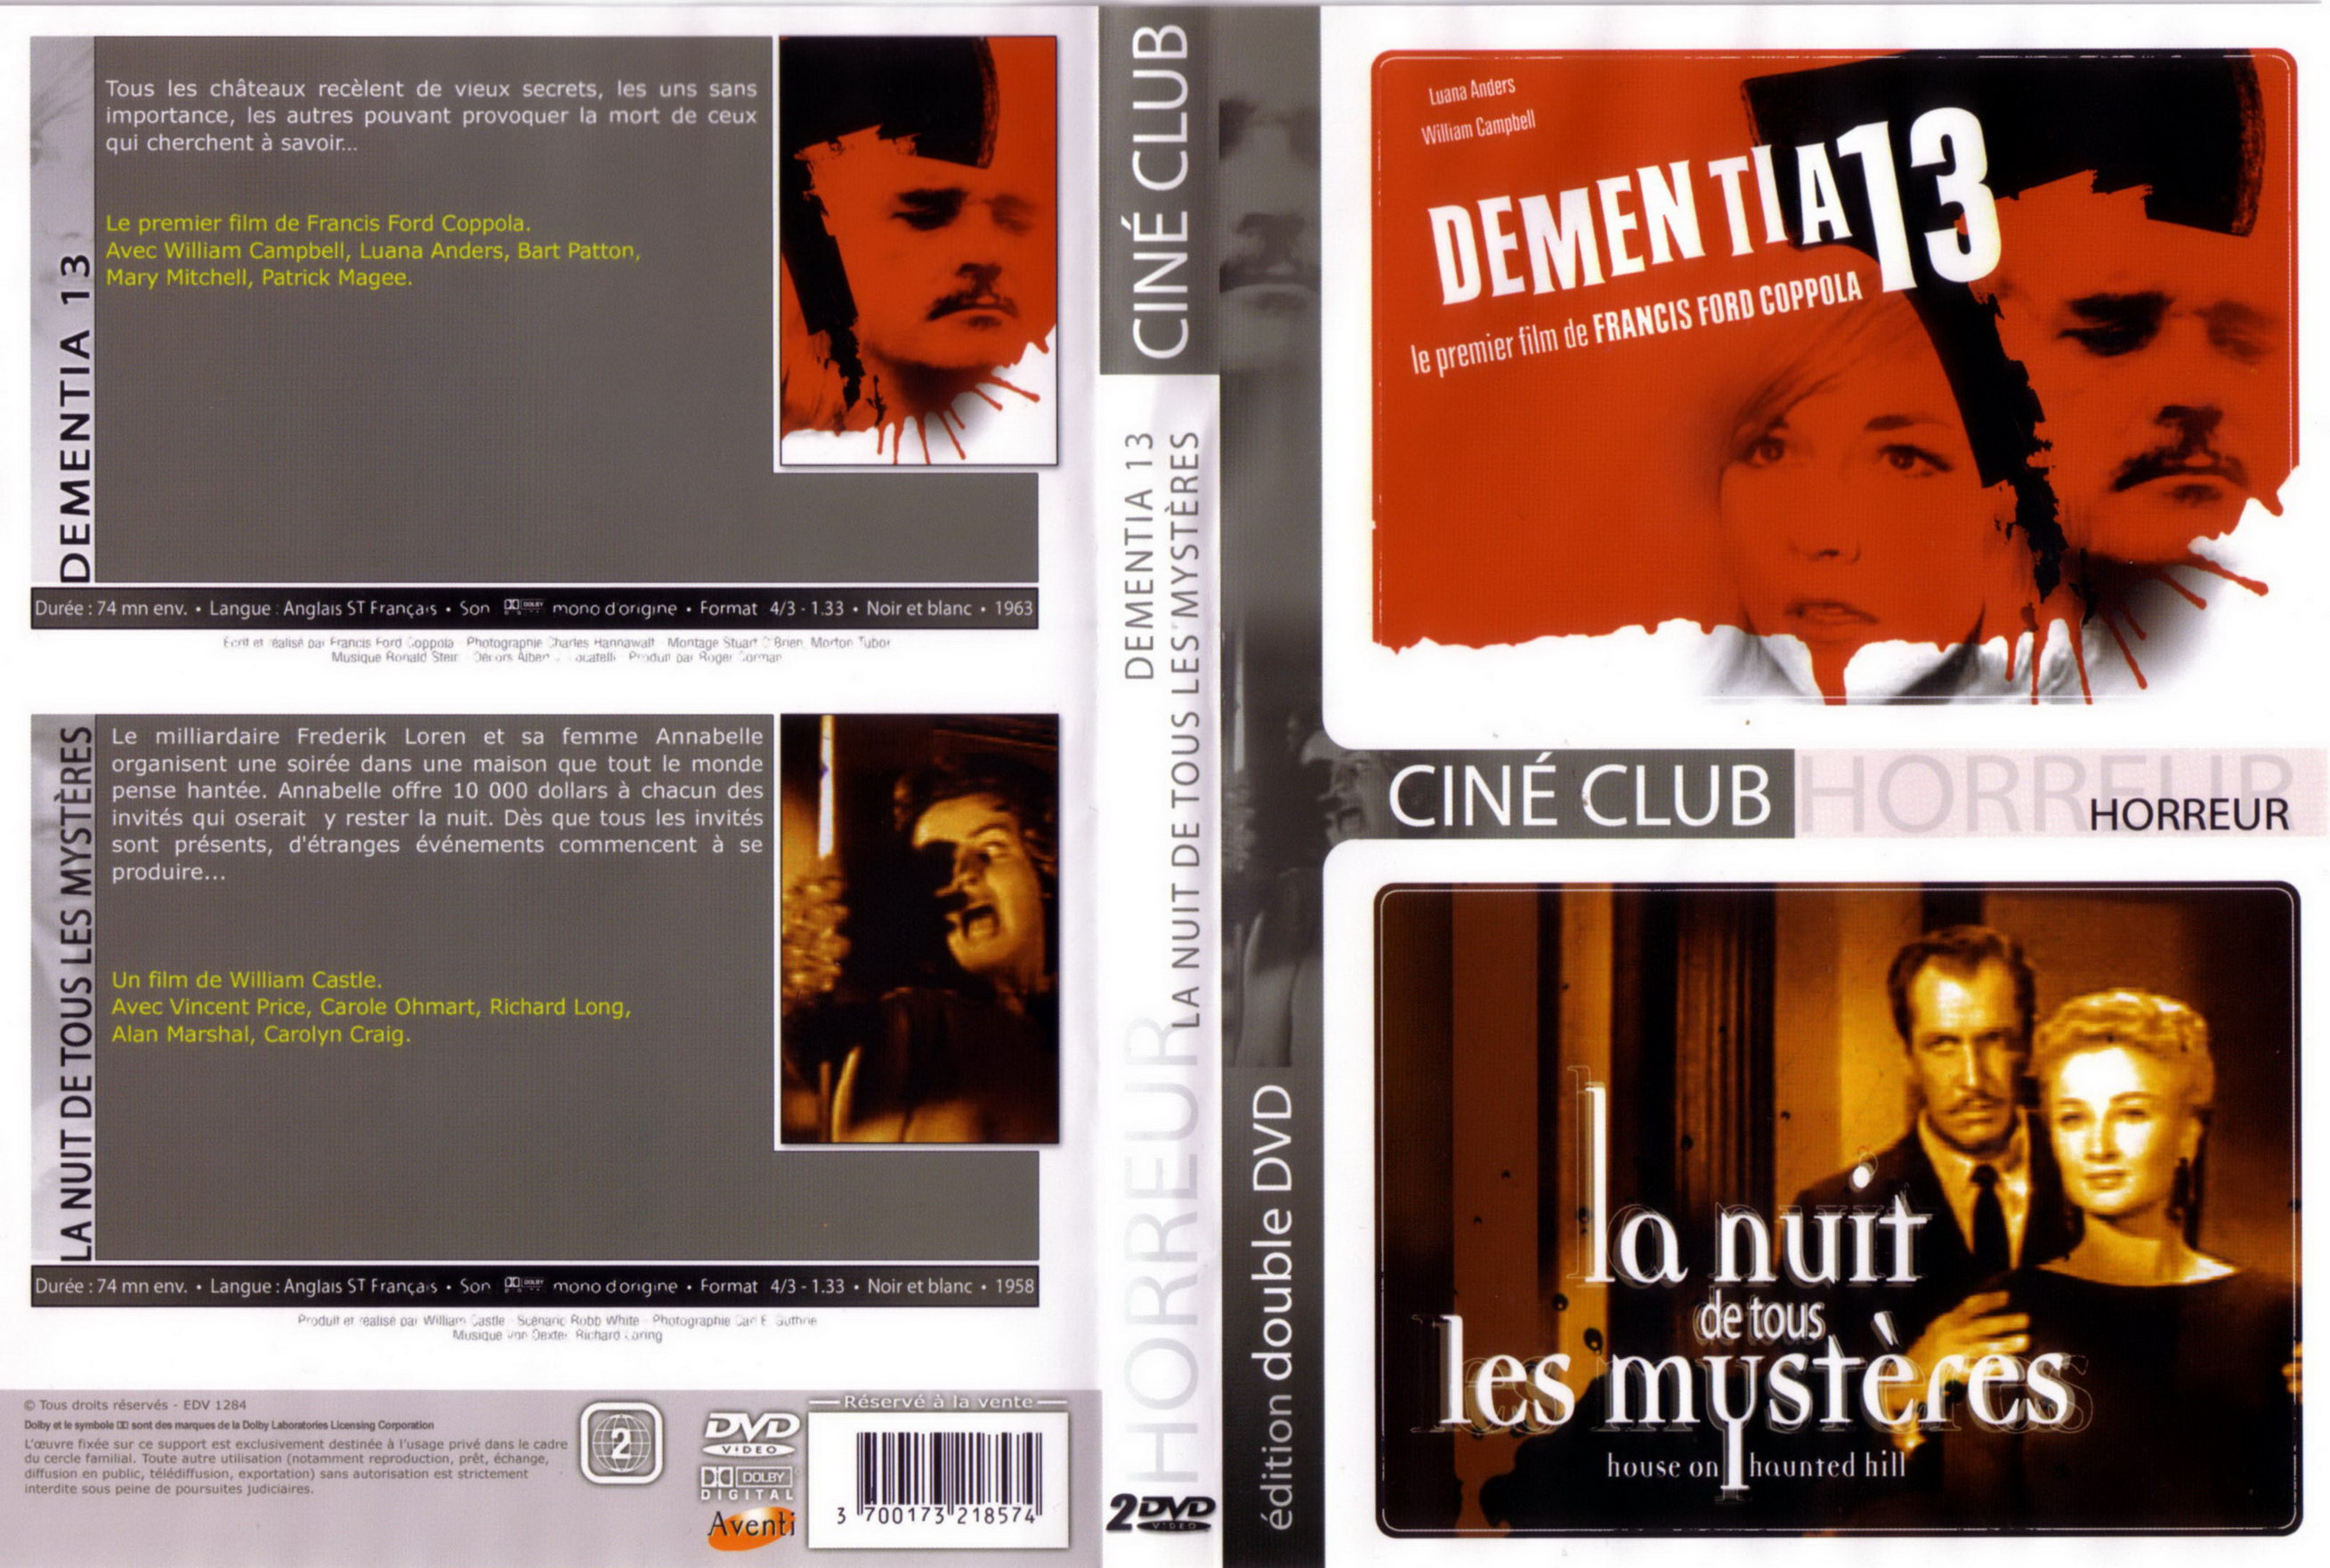 Jaquette DVD Dementia 13 - La nuit de tous les mysteres